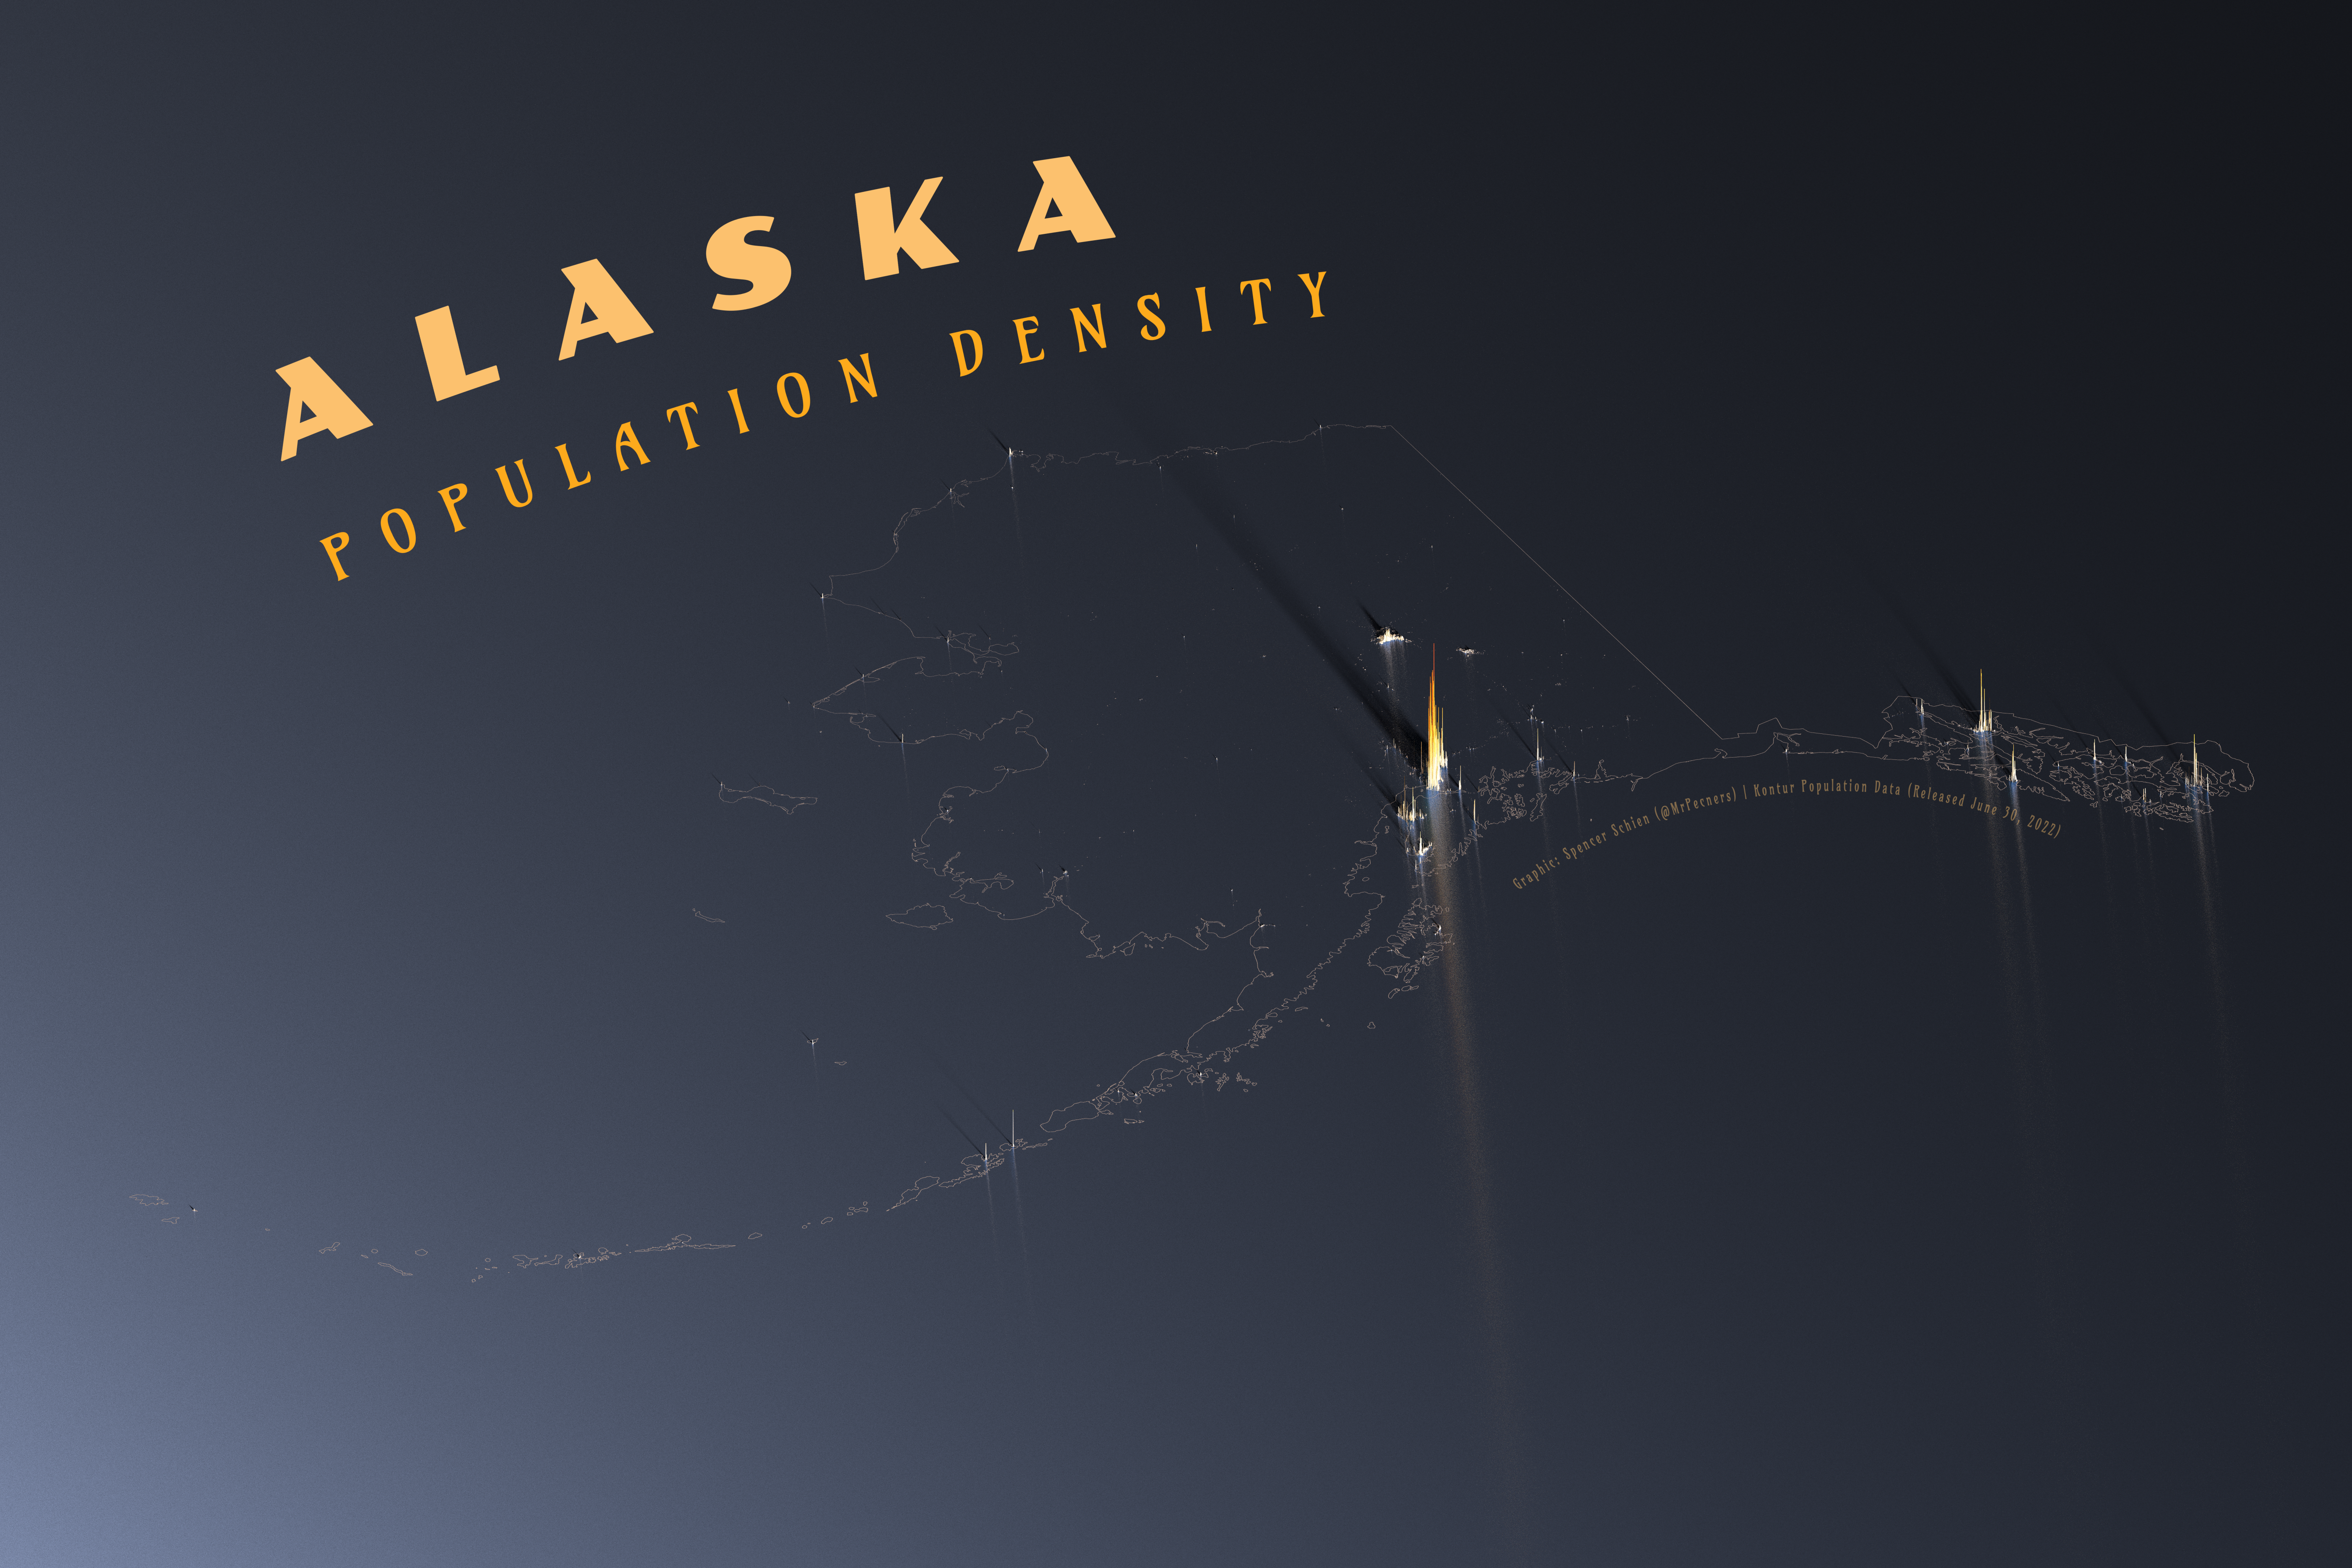 Alaska Population Density